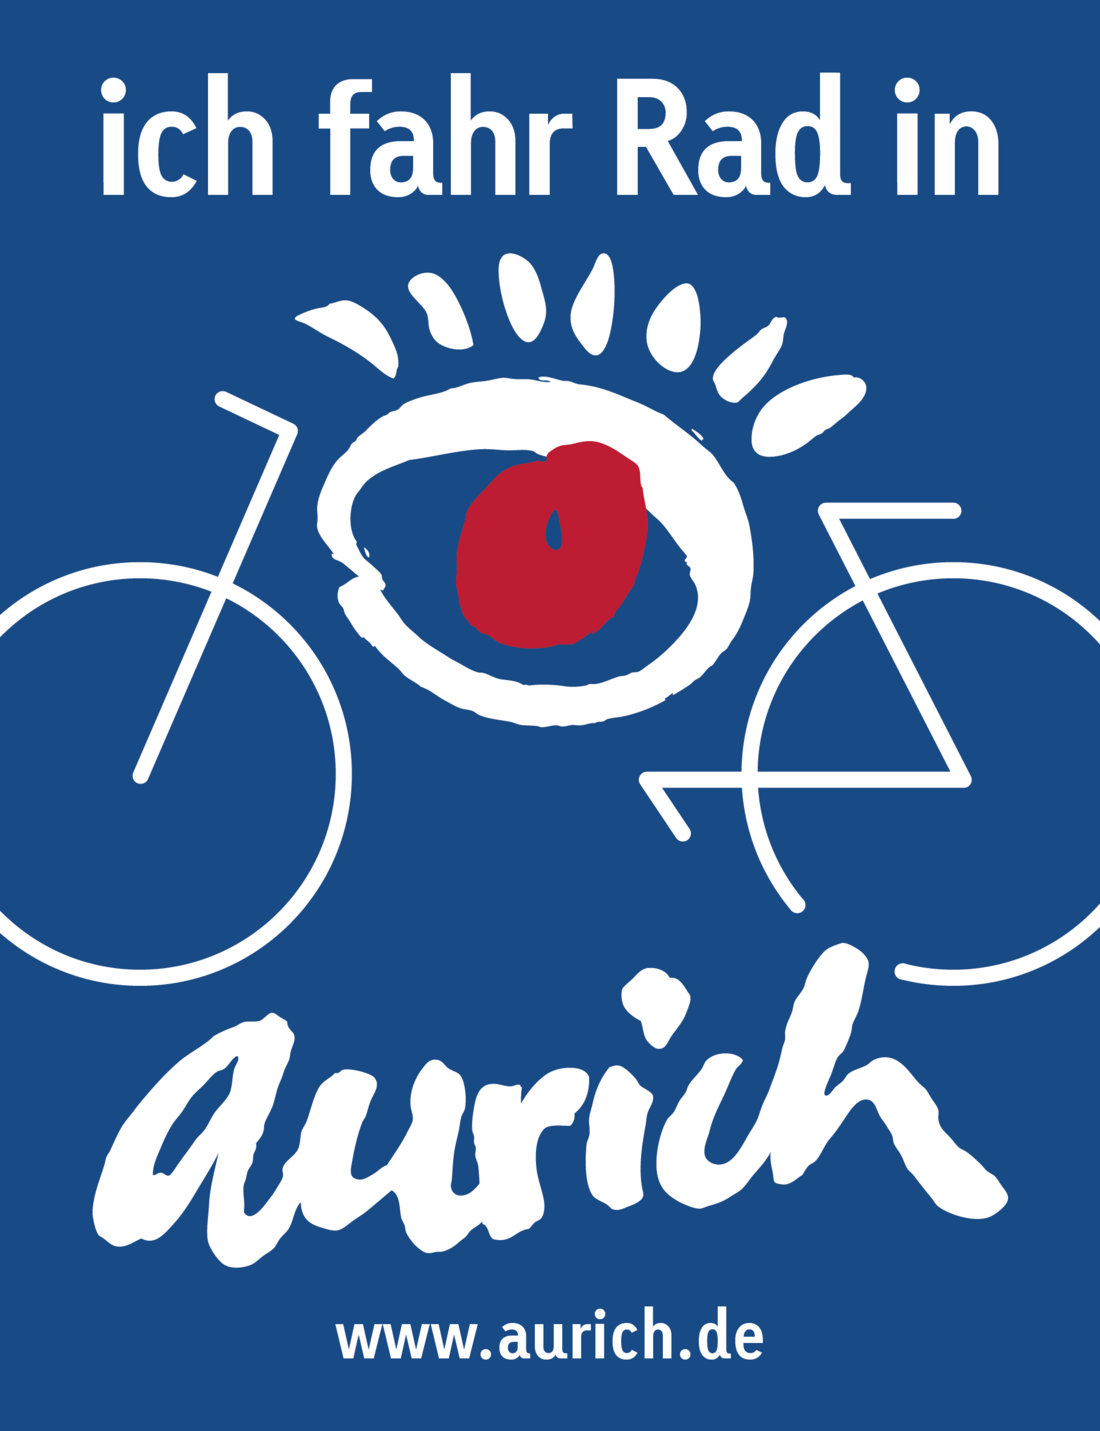 Logo "Ich fahr Rad in Aurich" der Stadt Aurich